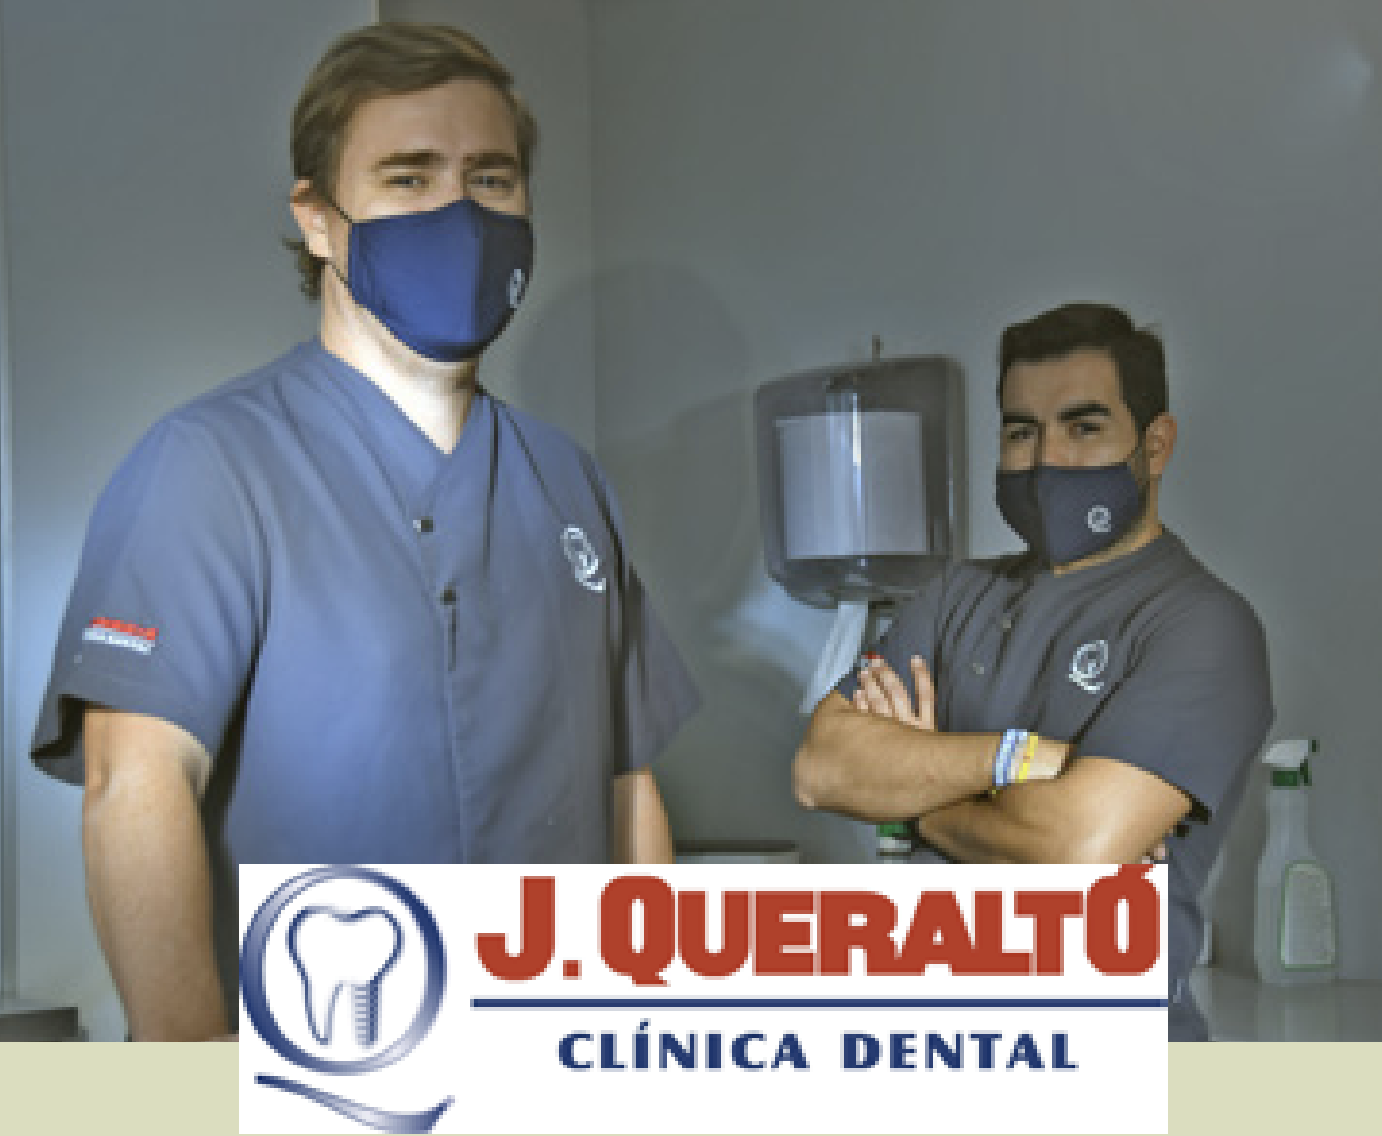 La referencia odontológica en Sevilla está en Clínica Dental Queraltó